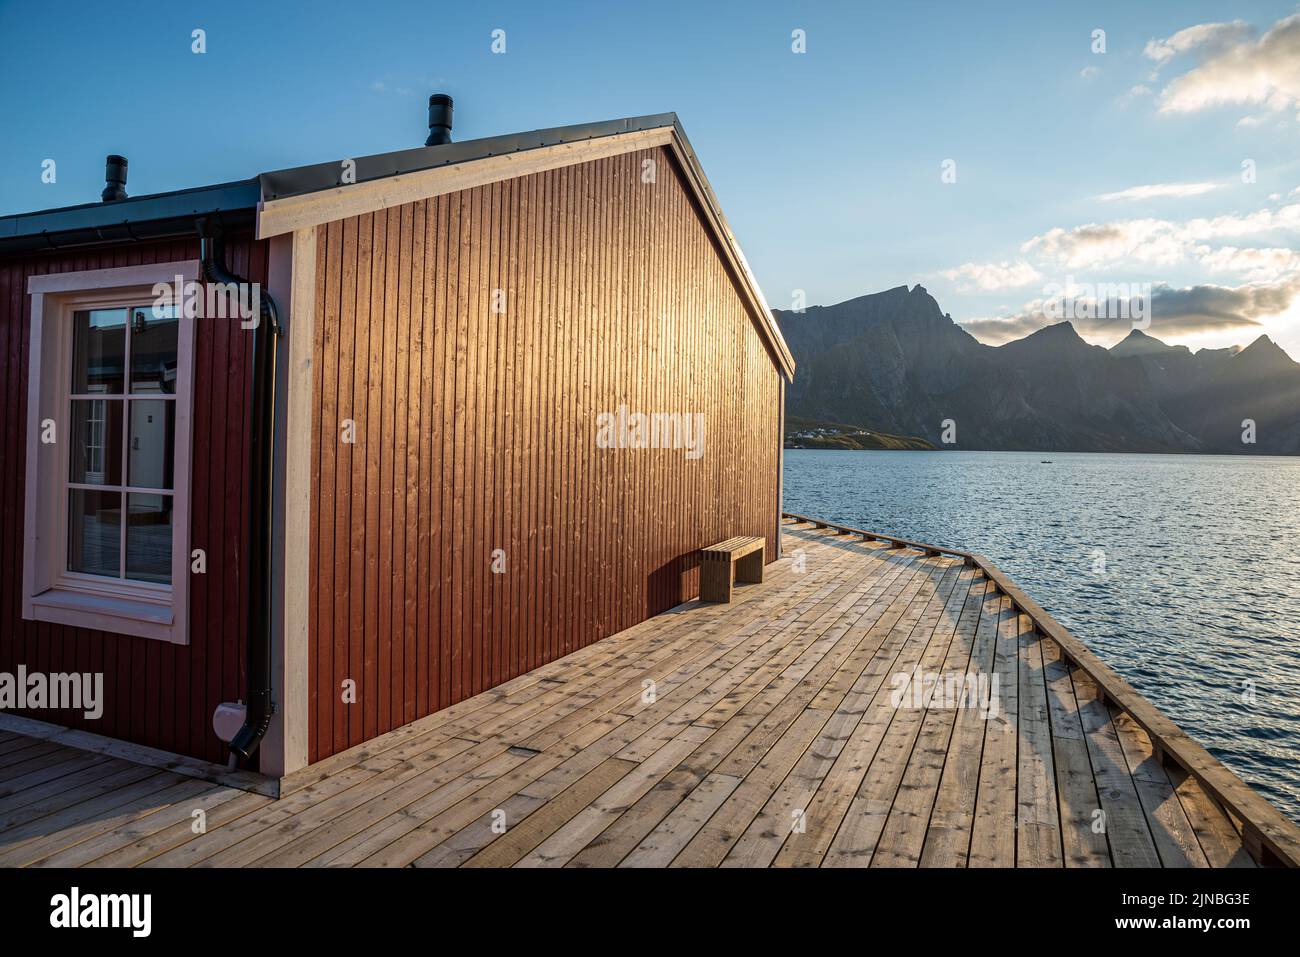 Rorbuer huts rouges à Hamnoy, îles Lofoten, Norvège Banque D'Images